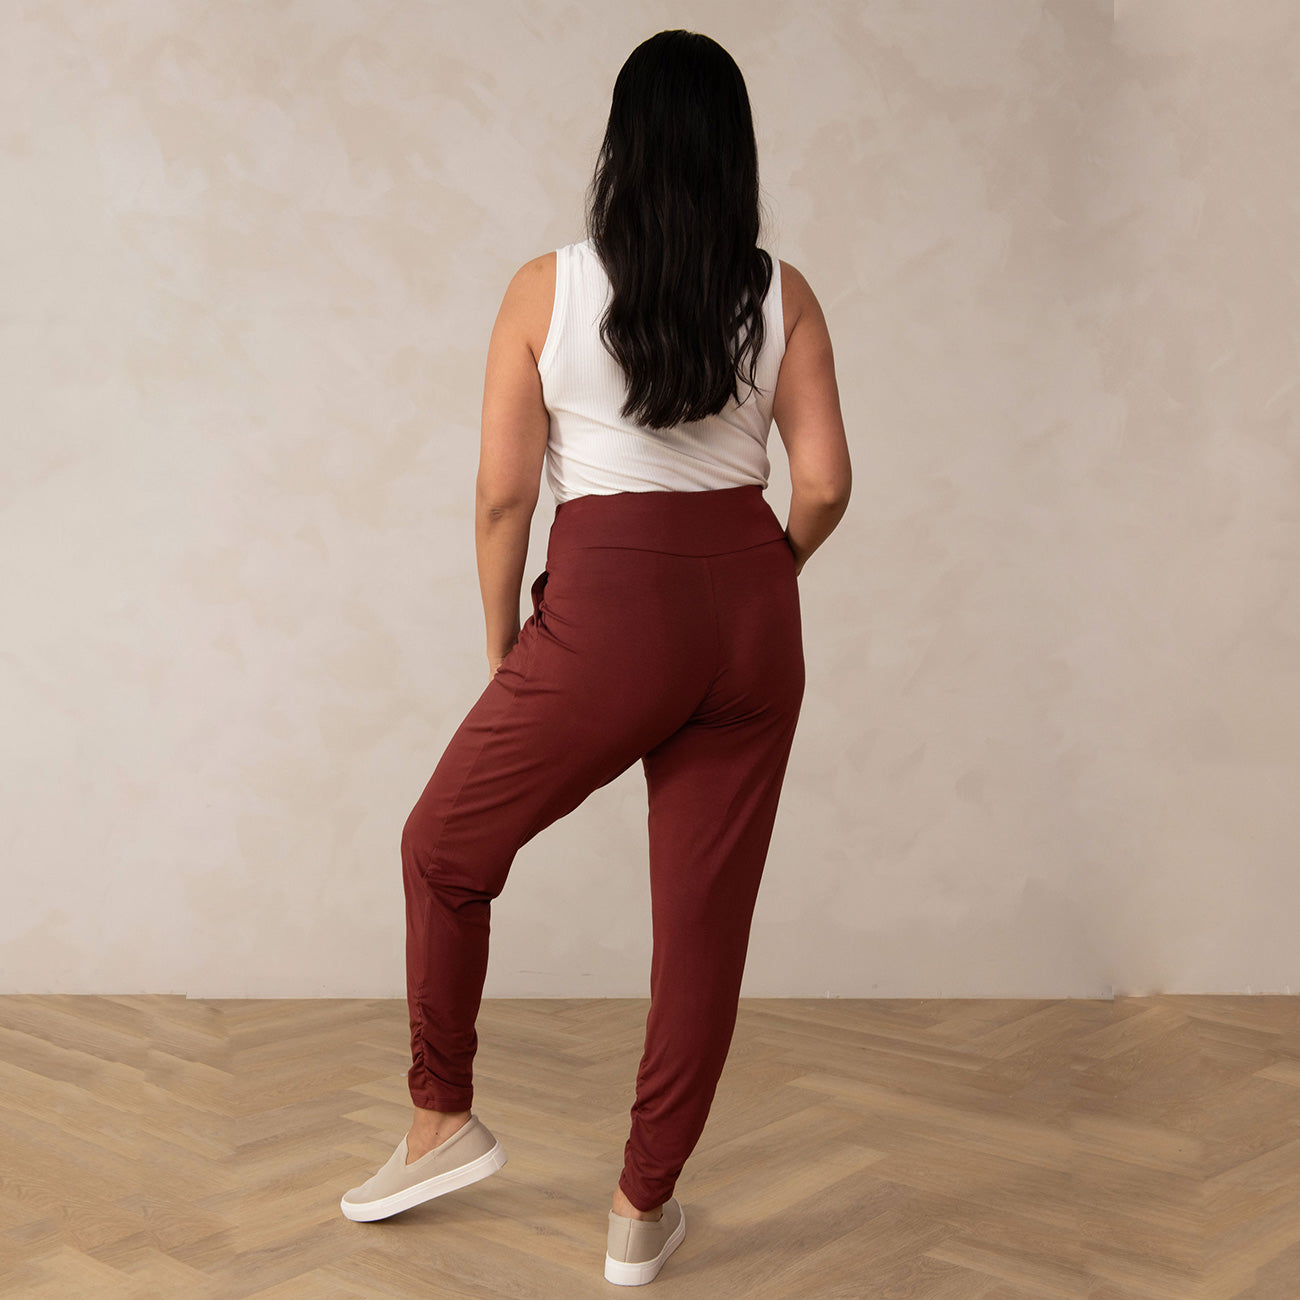 Unique Bargains Women's Plus Size Sweatpants Elastic Waist Joggers Pants